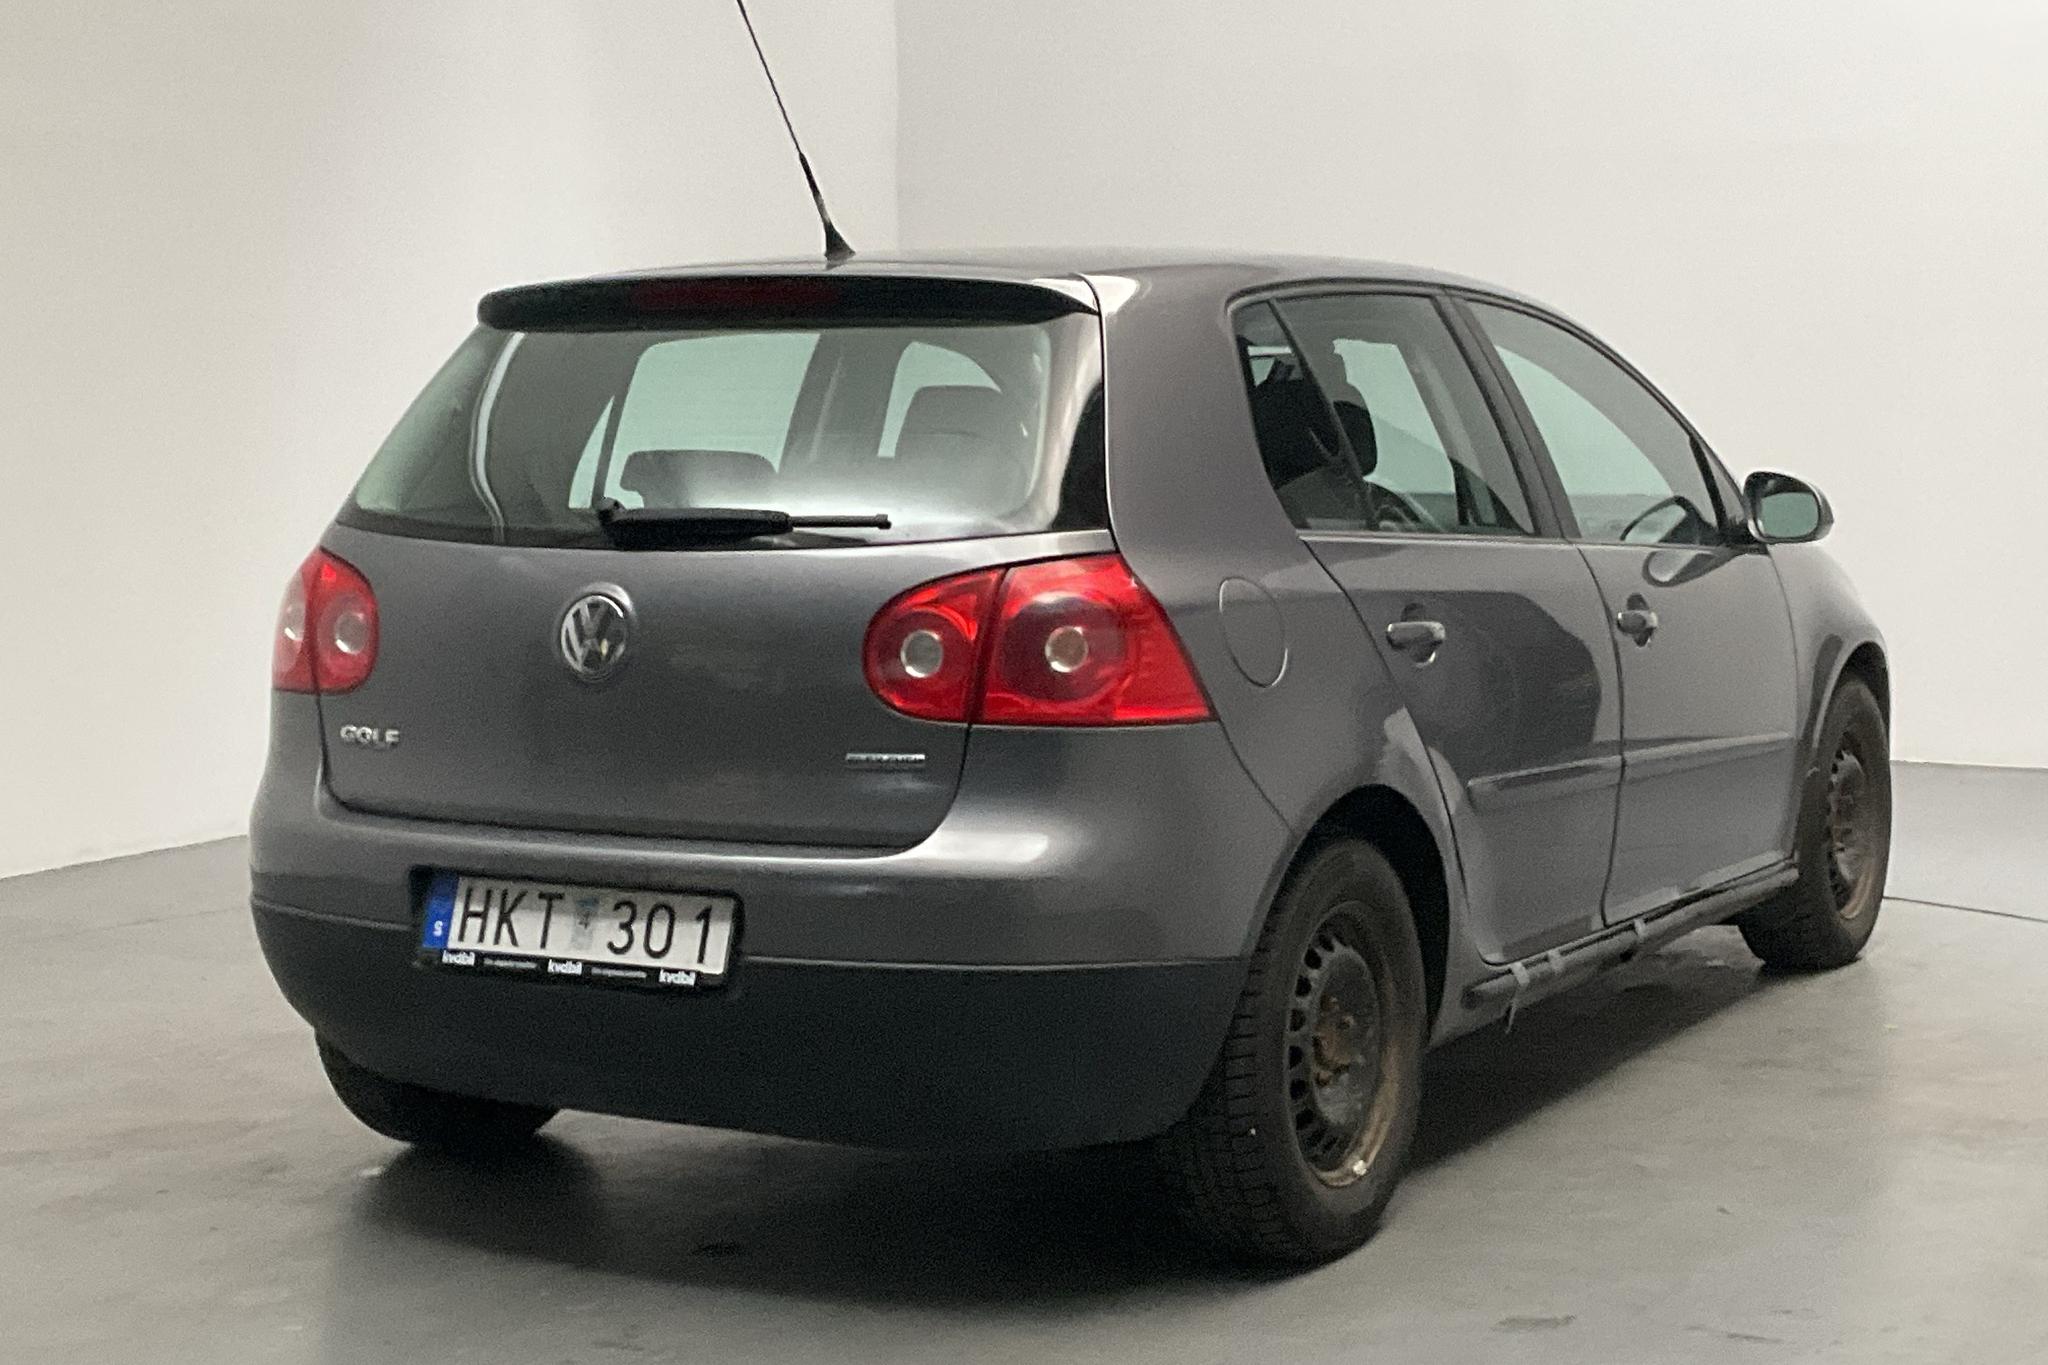 VW Golf A5 1.6 MultiFuel E85 5dr (102hk) - 122 650 km - Manual - Dark Grey - 2008